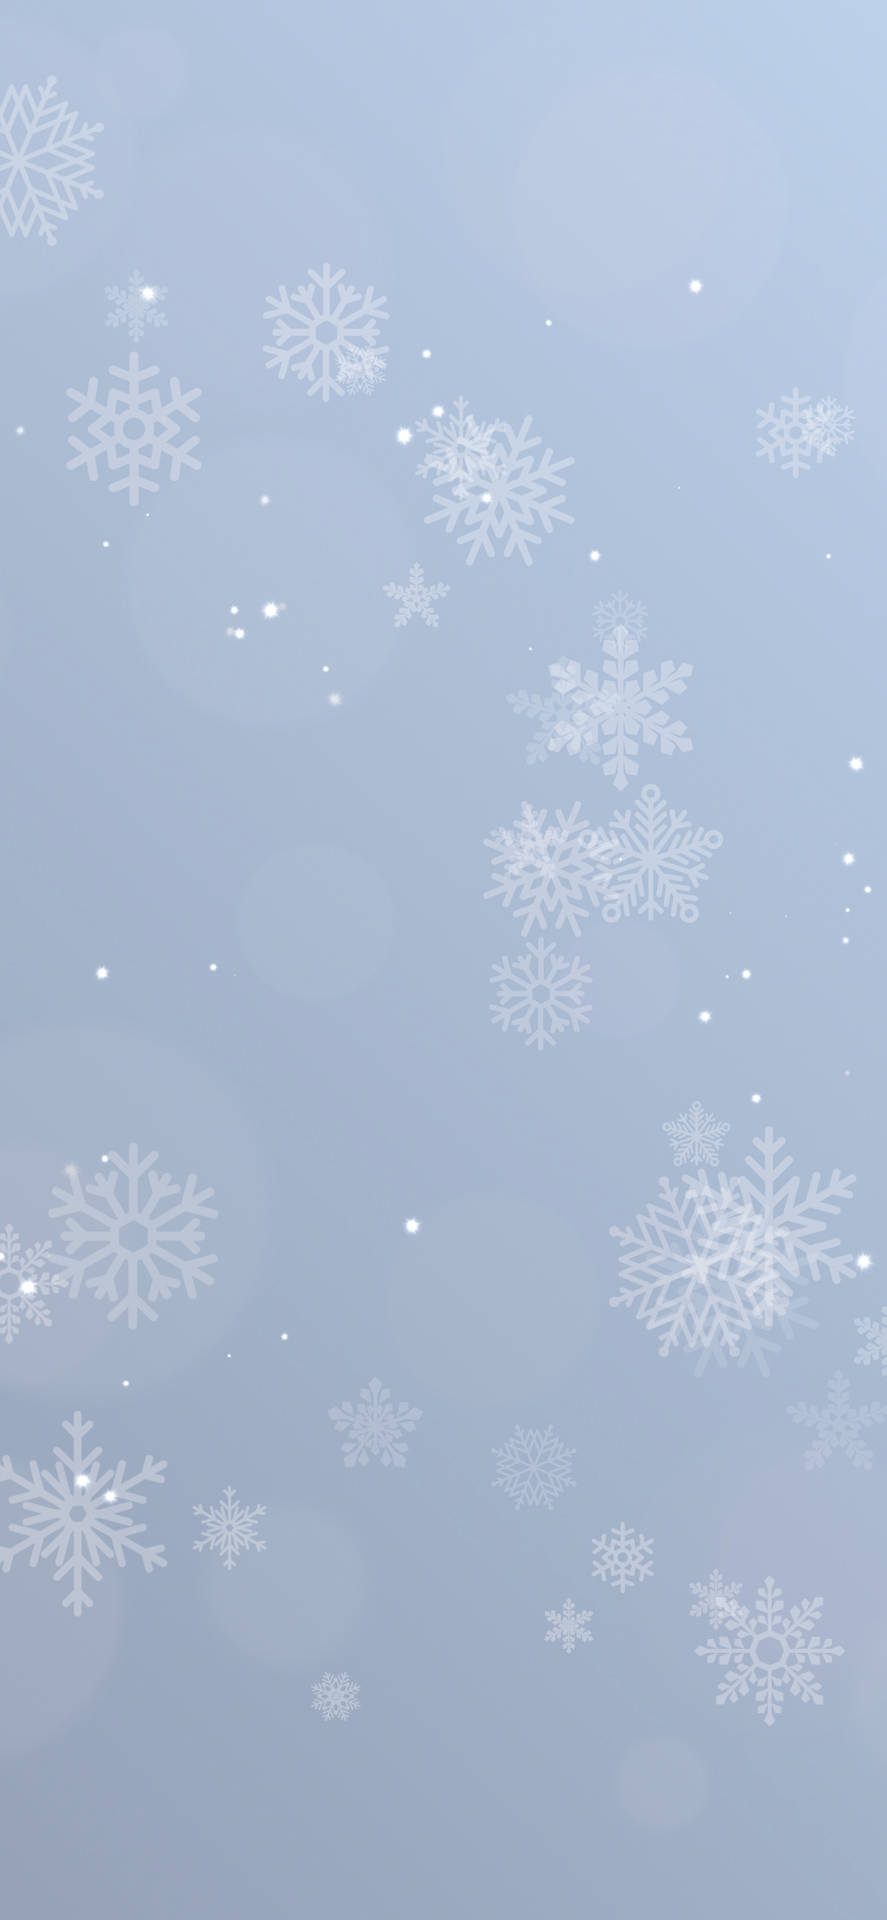 Einweißer Hintergrund Mit Schneeflocken Darauf. Wallpaper